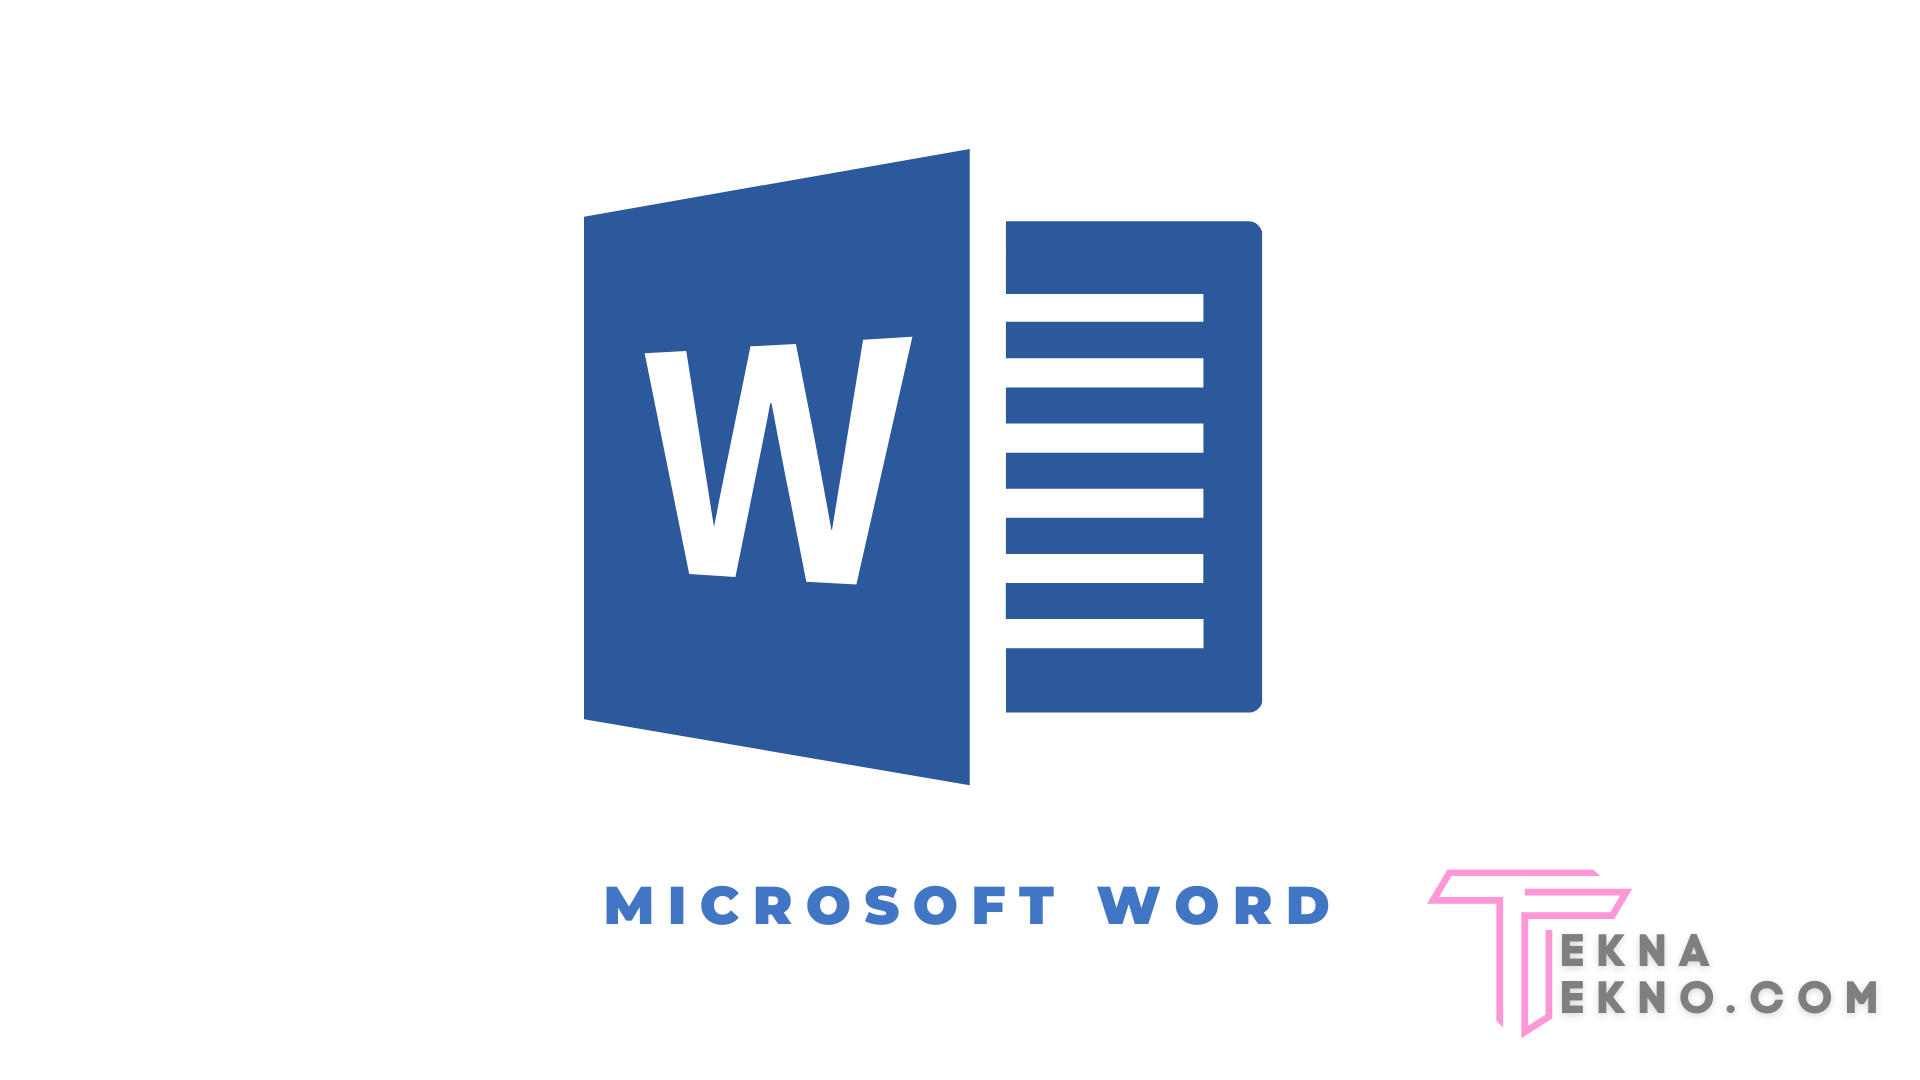 Microsoft Word Pengertian Fungsi Kegunaan Dan Manfaat 5403